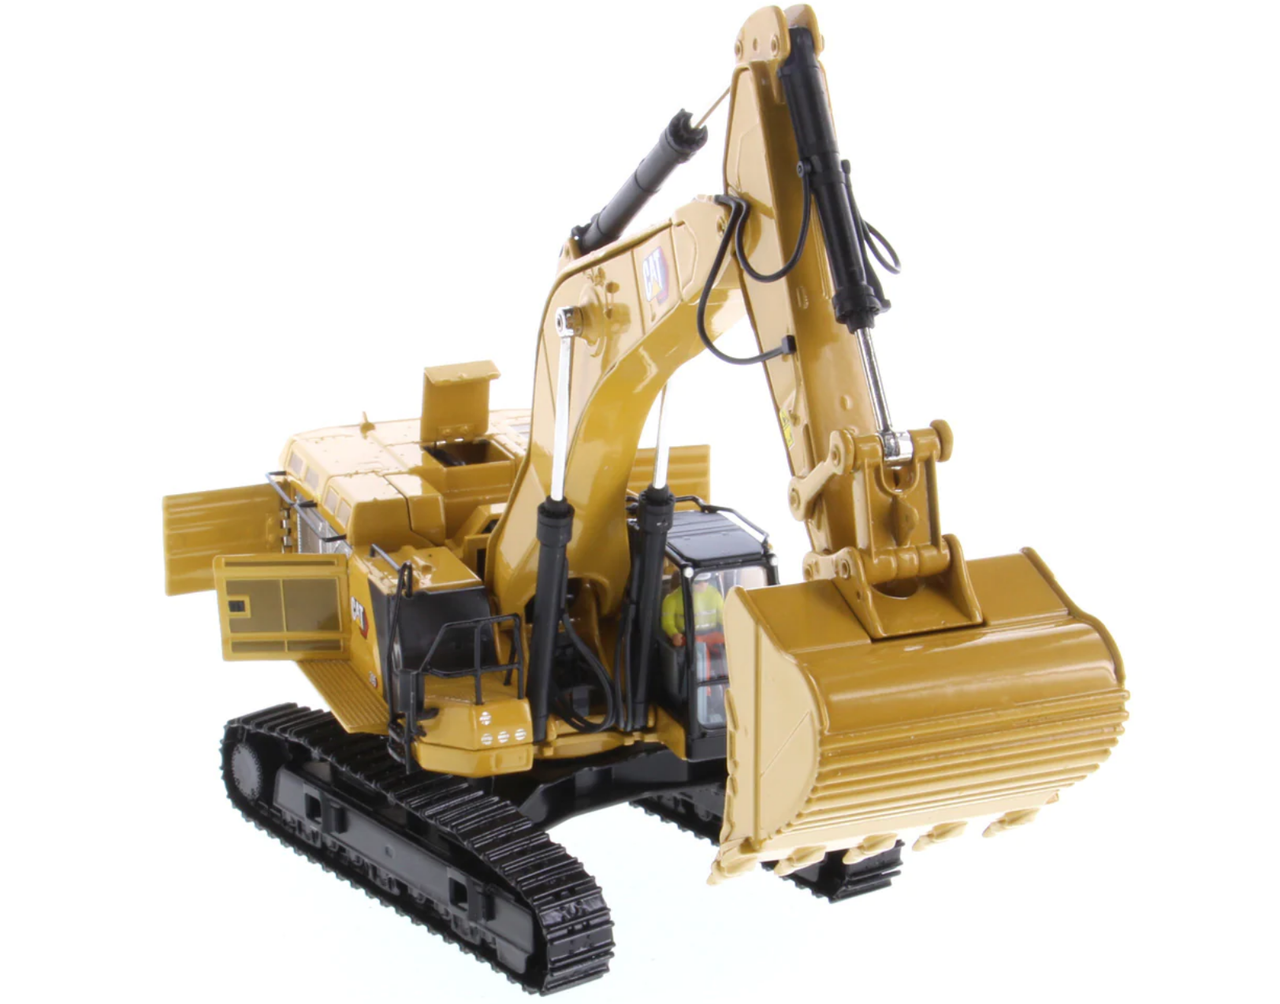 1/50 Diecast Masters Cat 395 Large Hydraulic Excavator